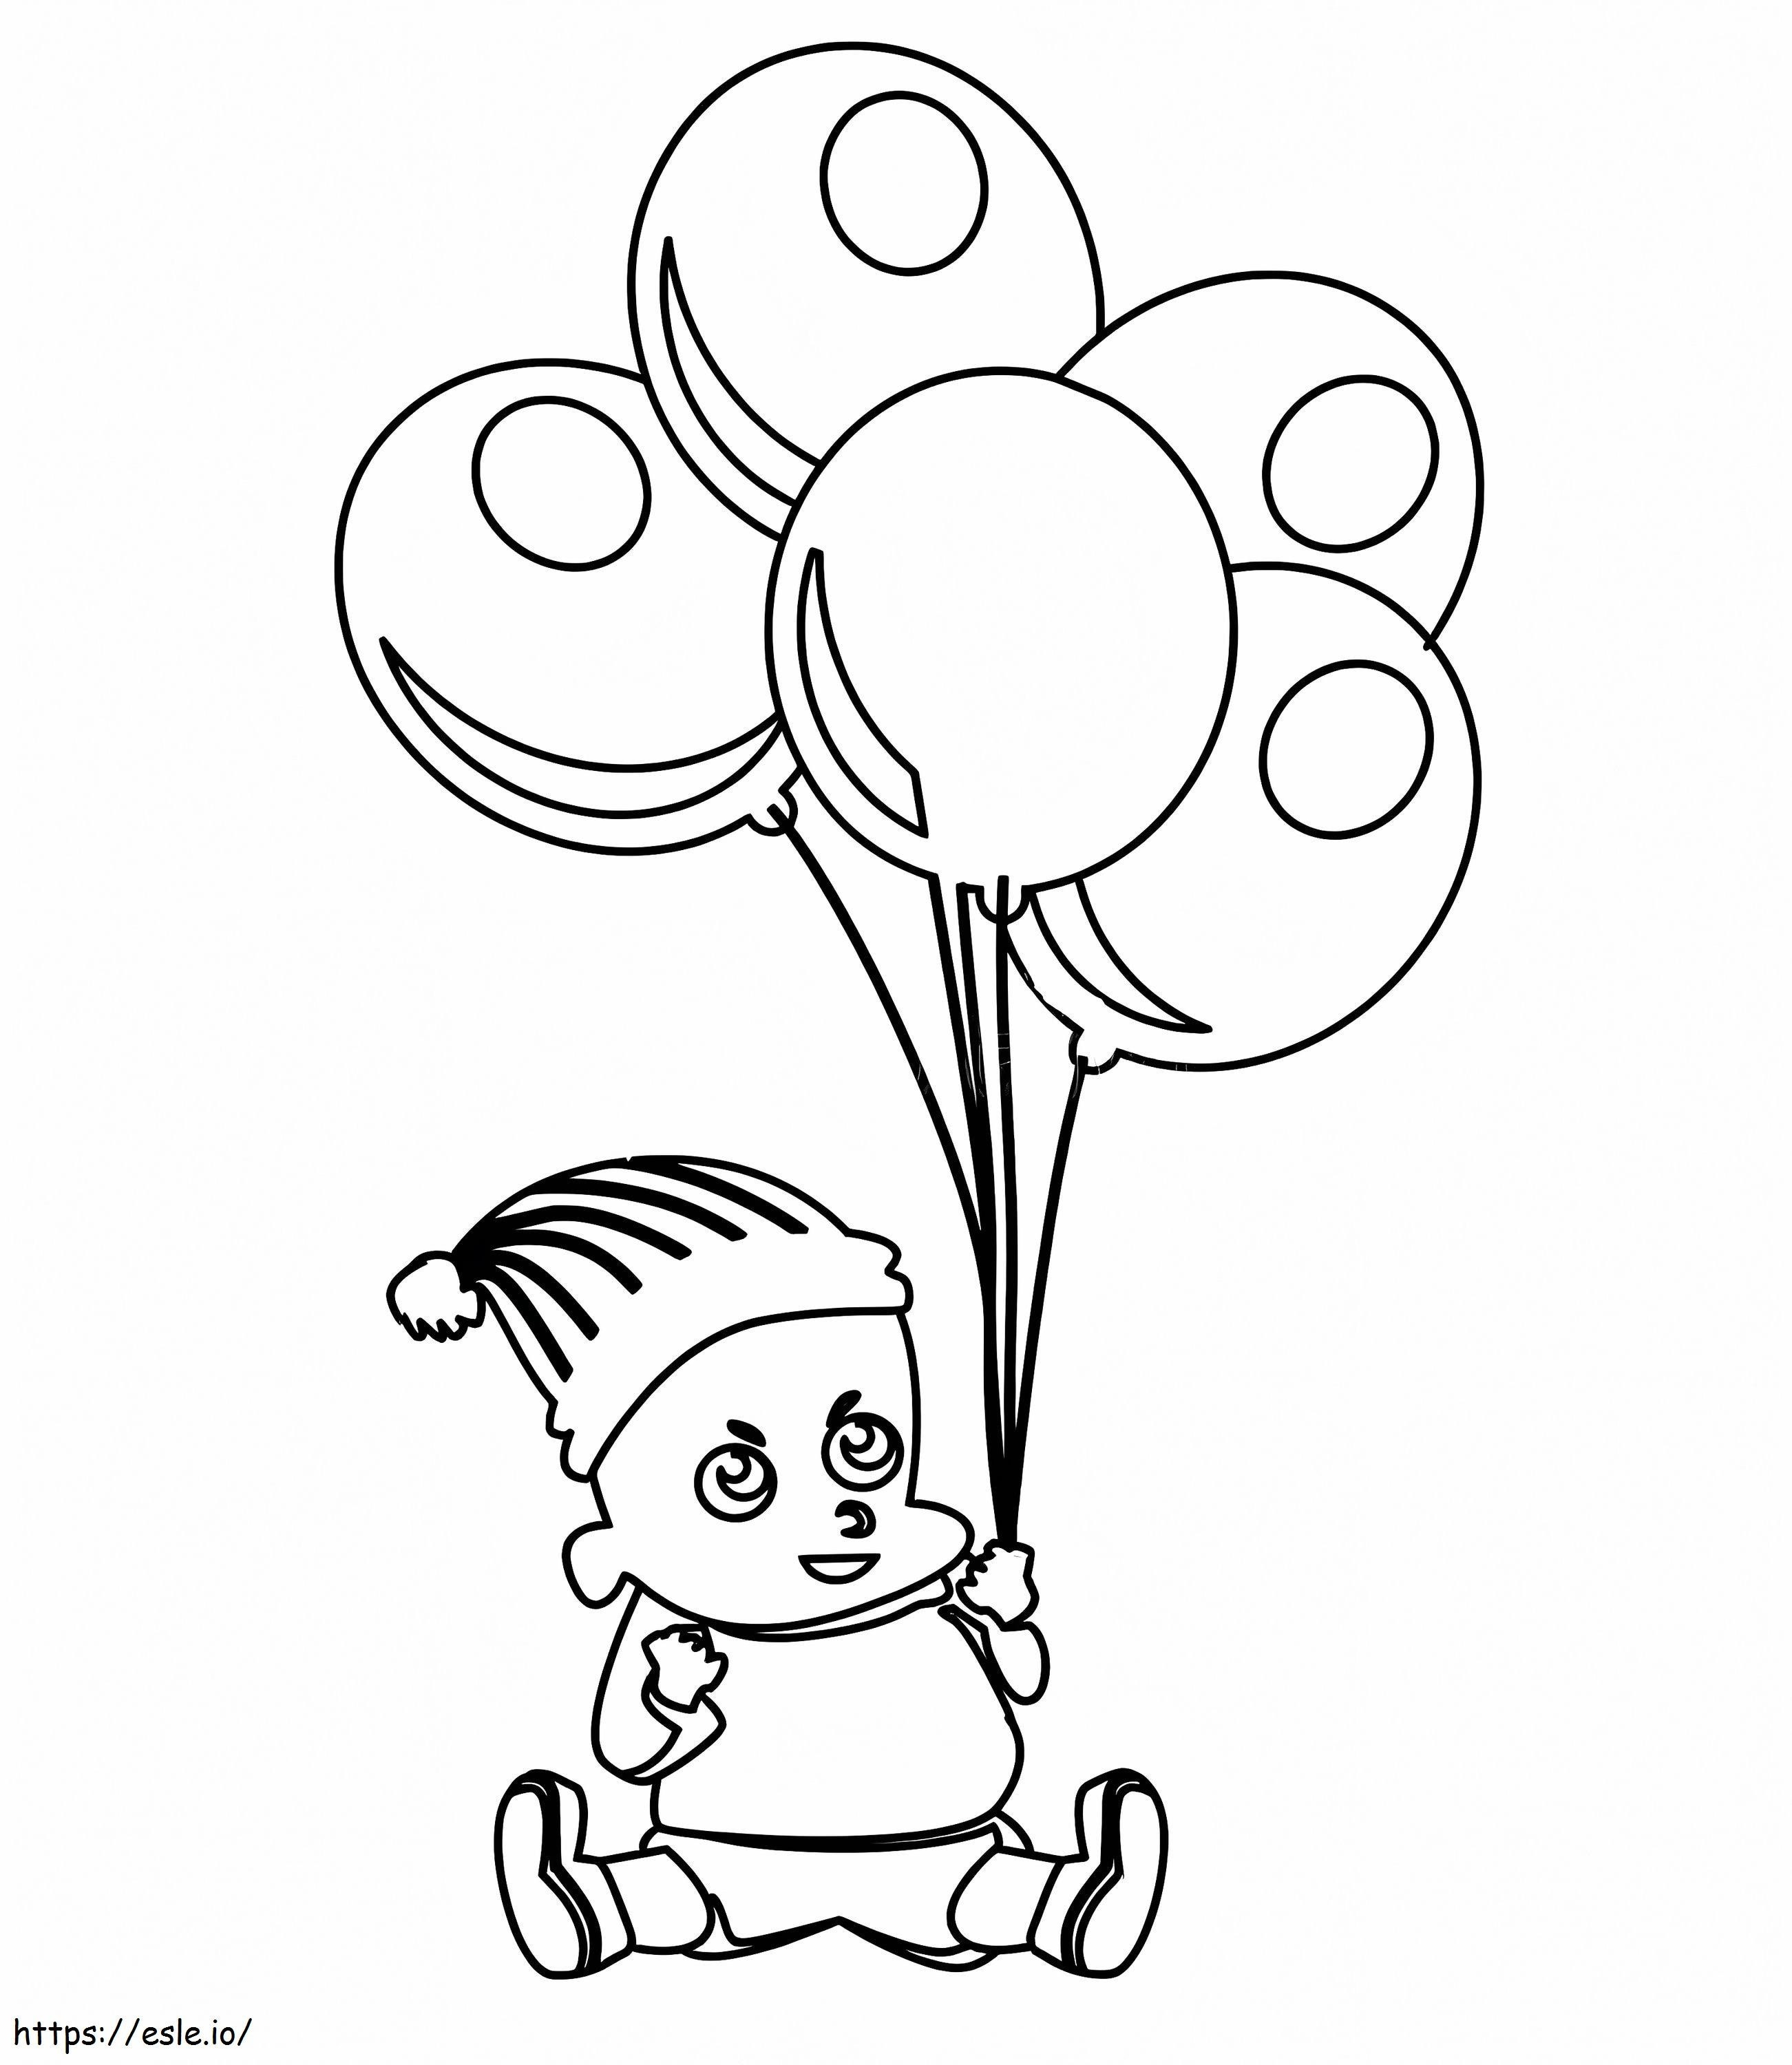 Bebê fofo com balões para colorir